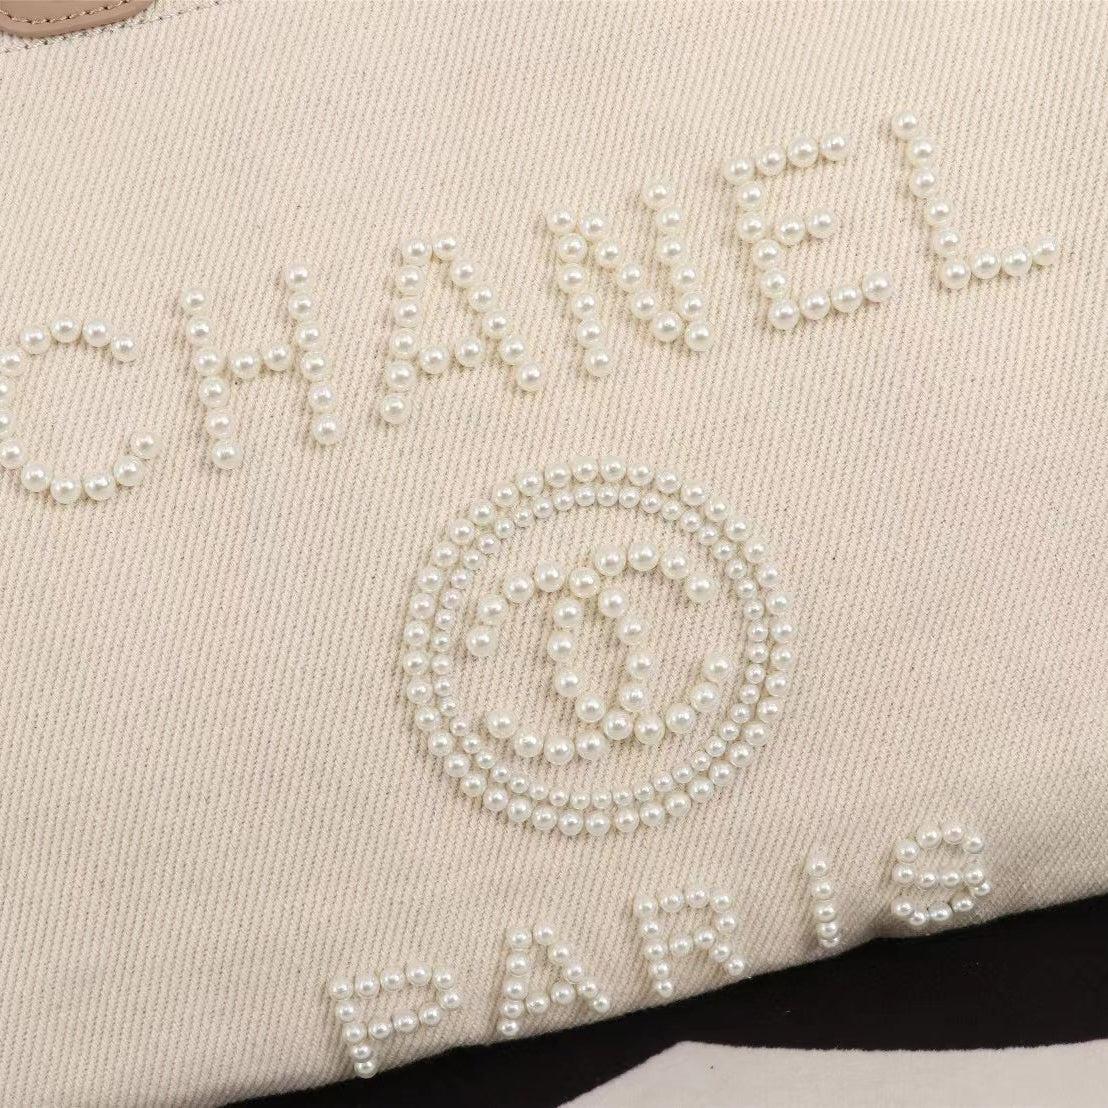 Chanel Canvas Pearl Deauville Tote replica